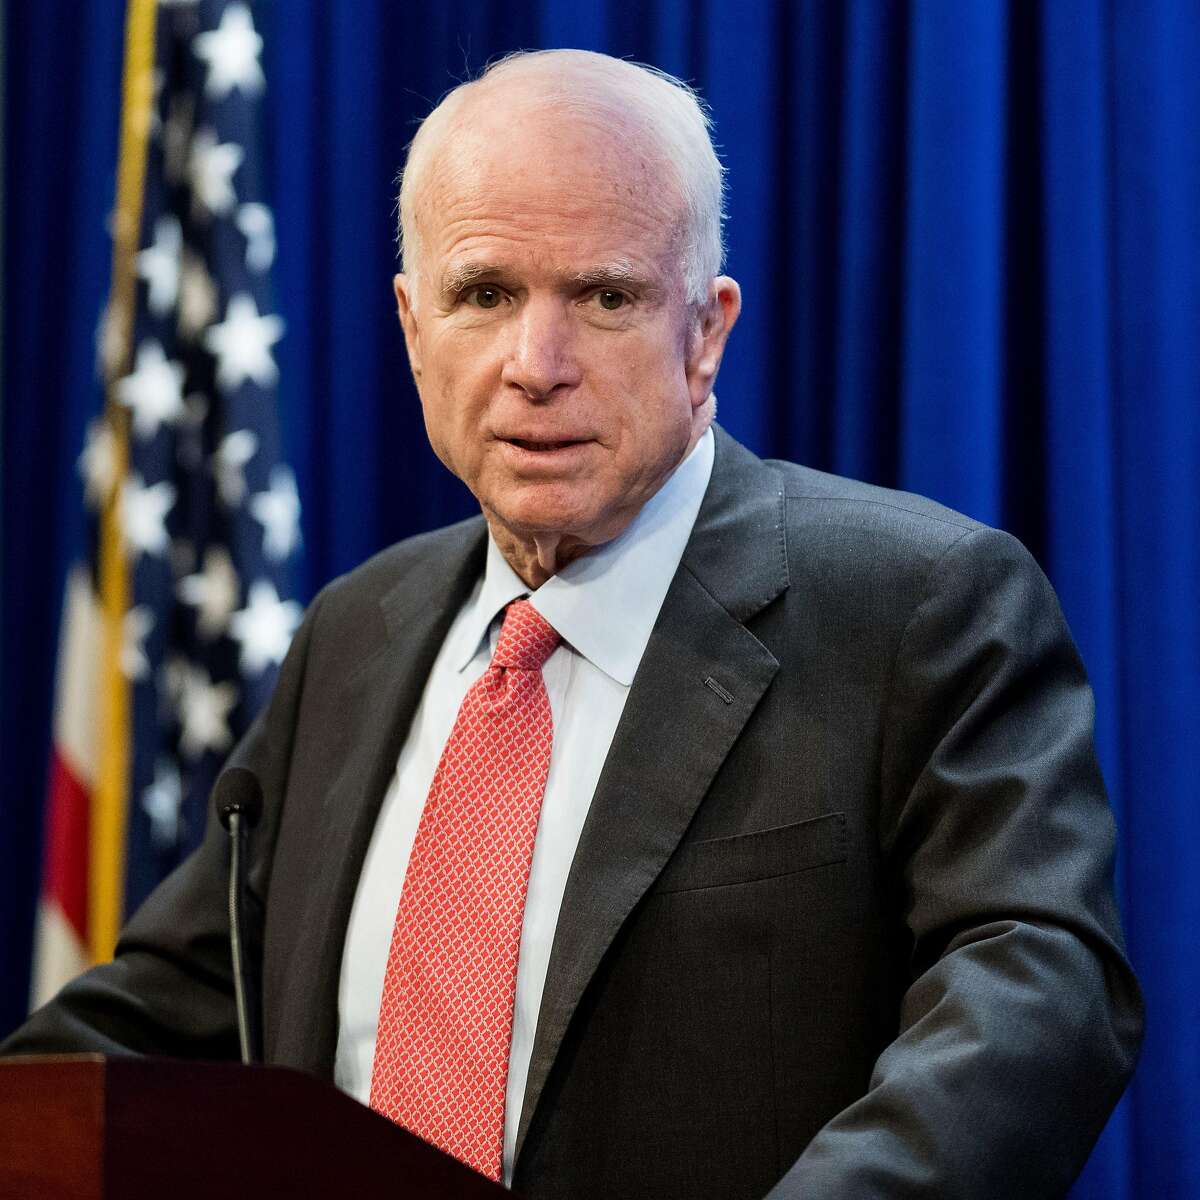 Sen. John McCain on July 11, 2017, at the Heritage Foundation in Washington, D.C. (Michael Brochstein/Sipa USA/TNS)